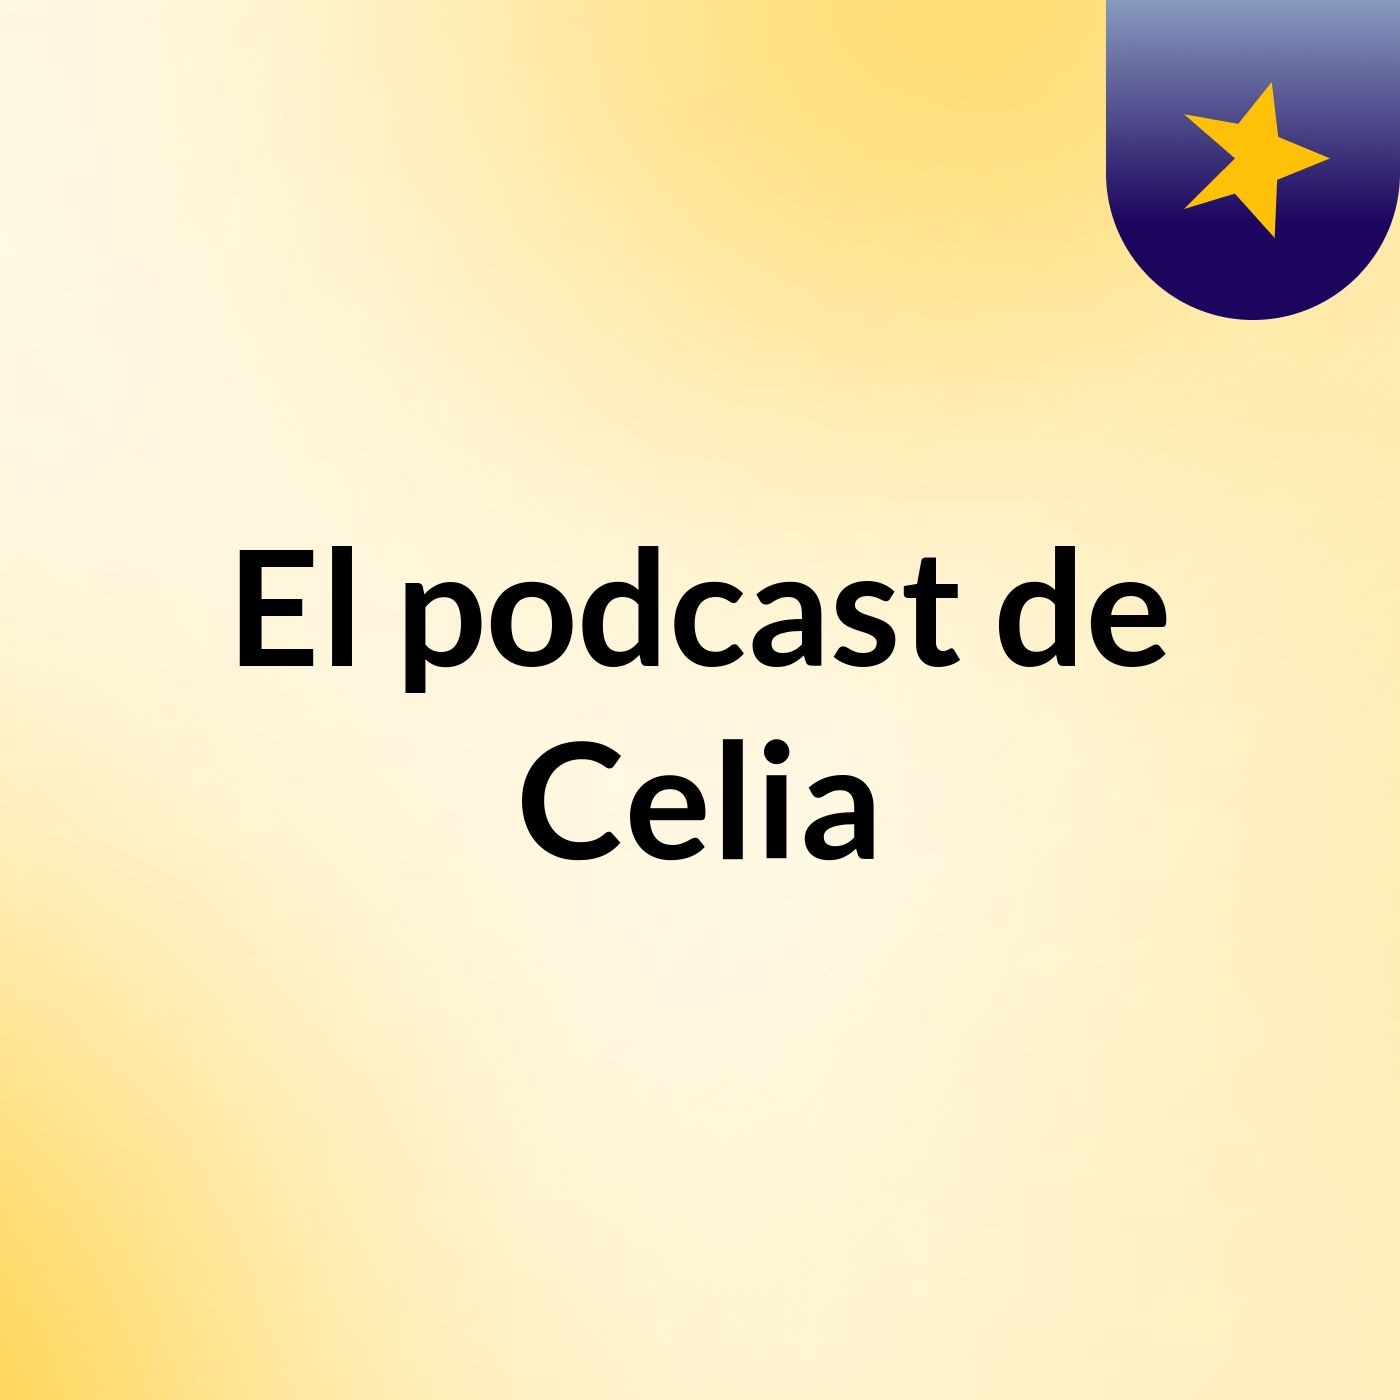 El podcast de Celia